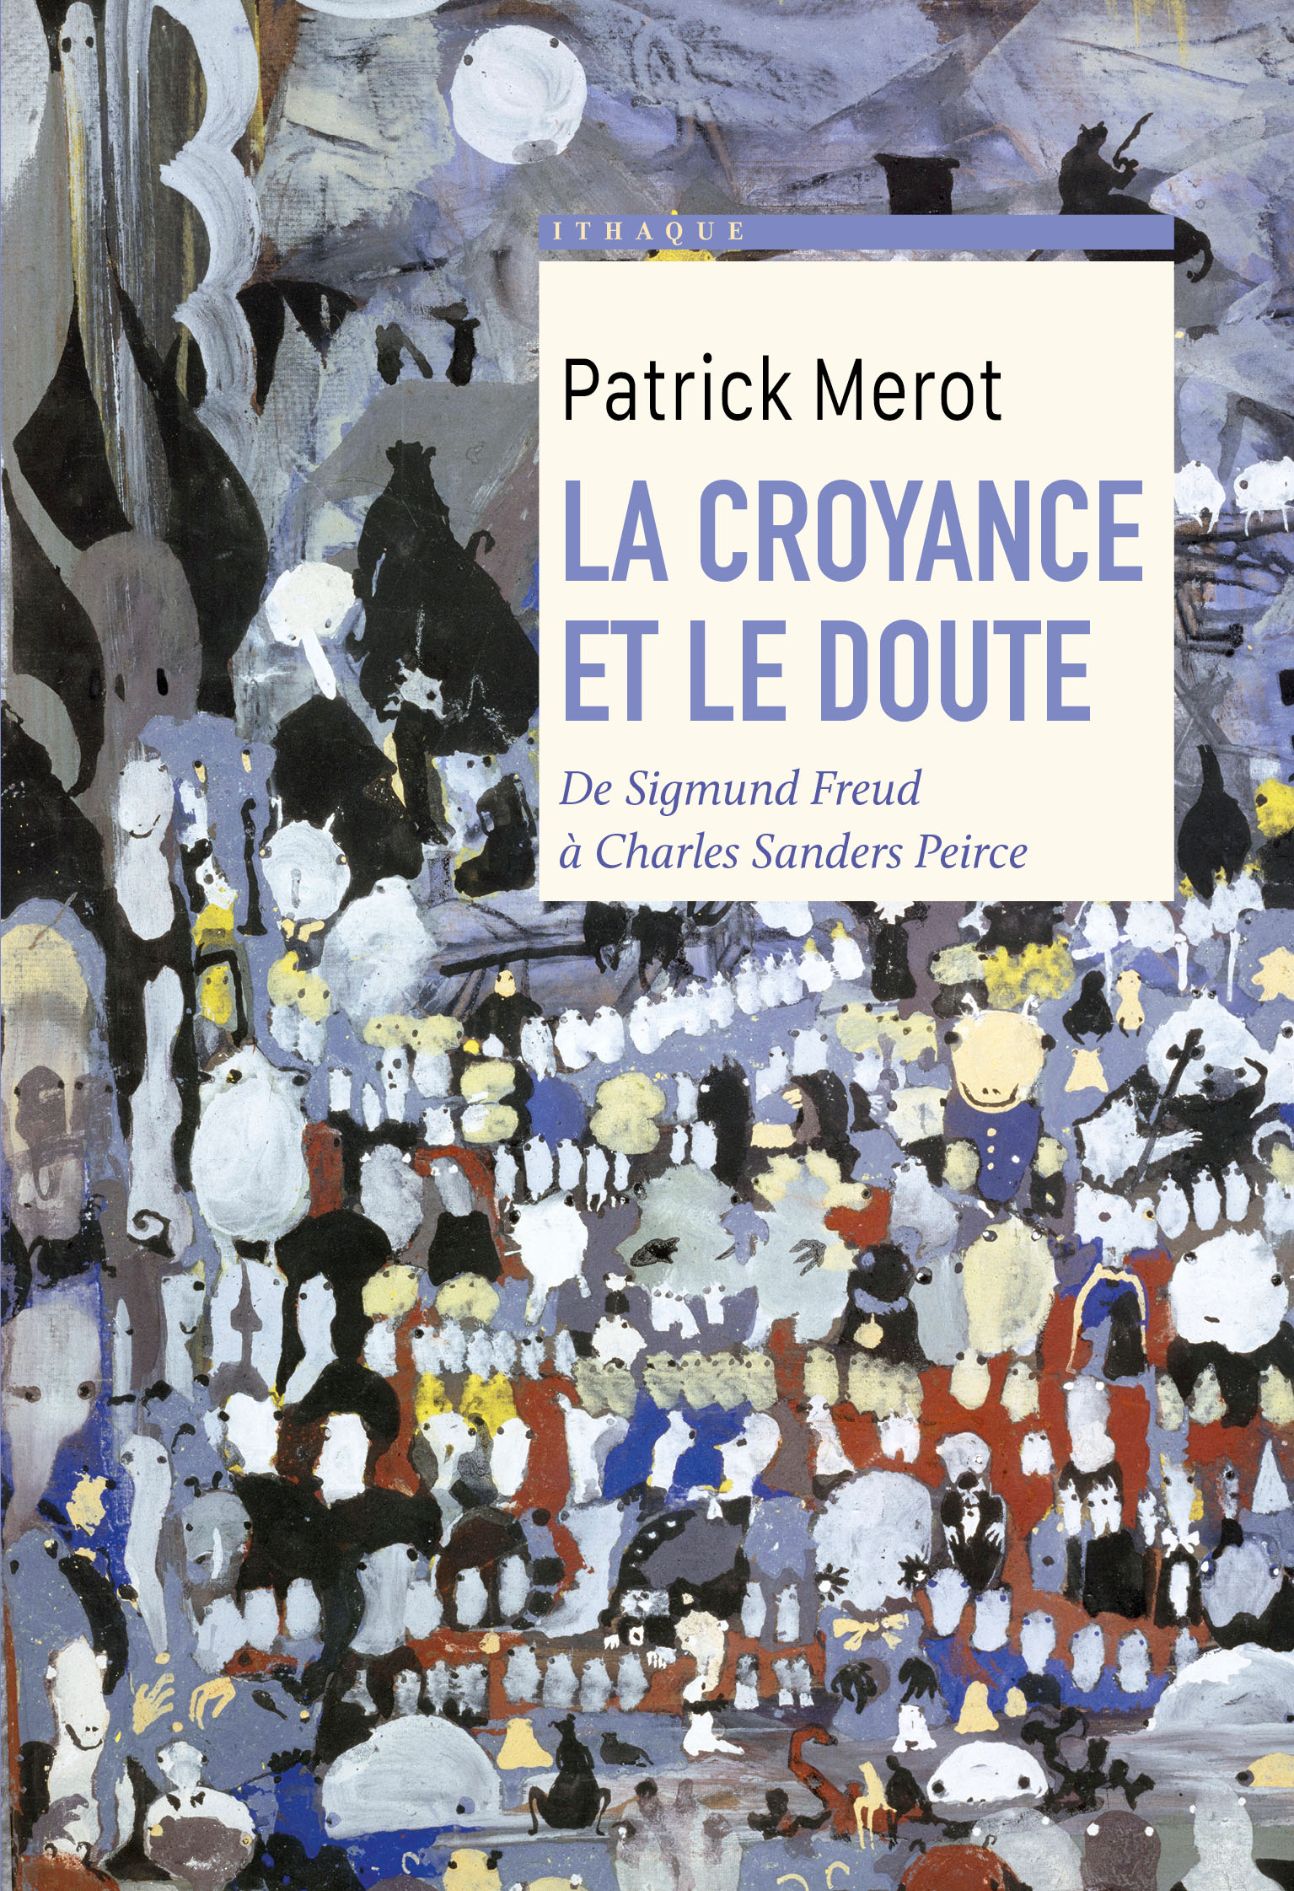 Patrick Mérot, La croyance et le doute